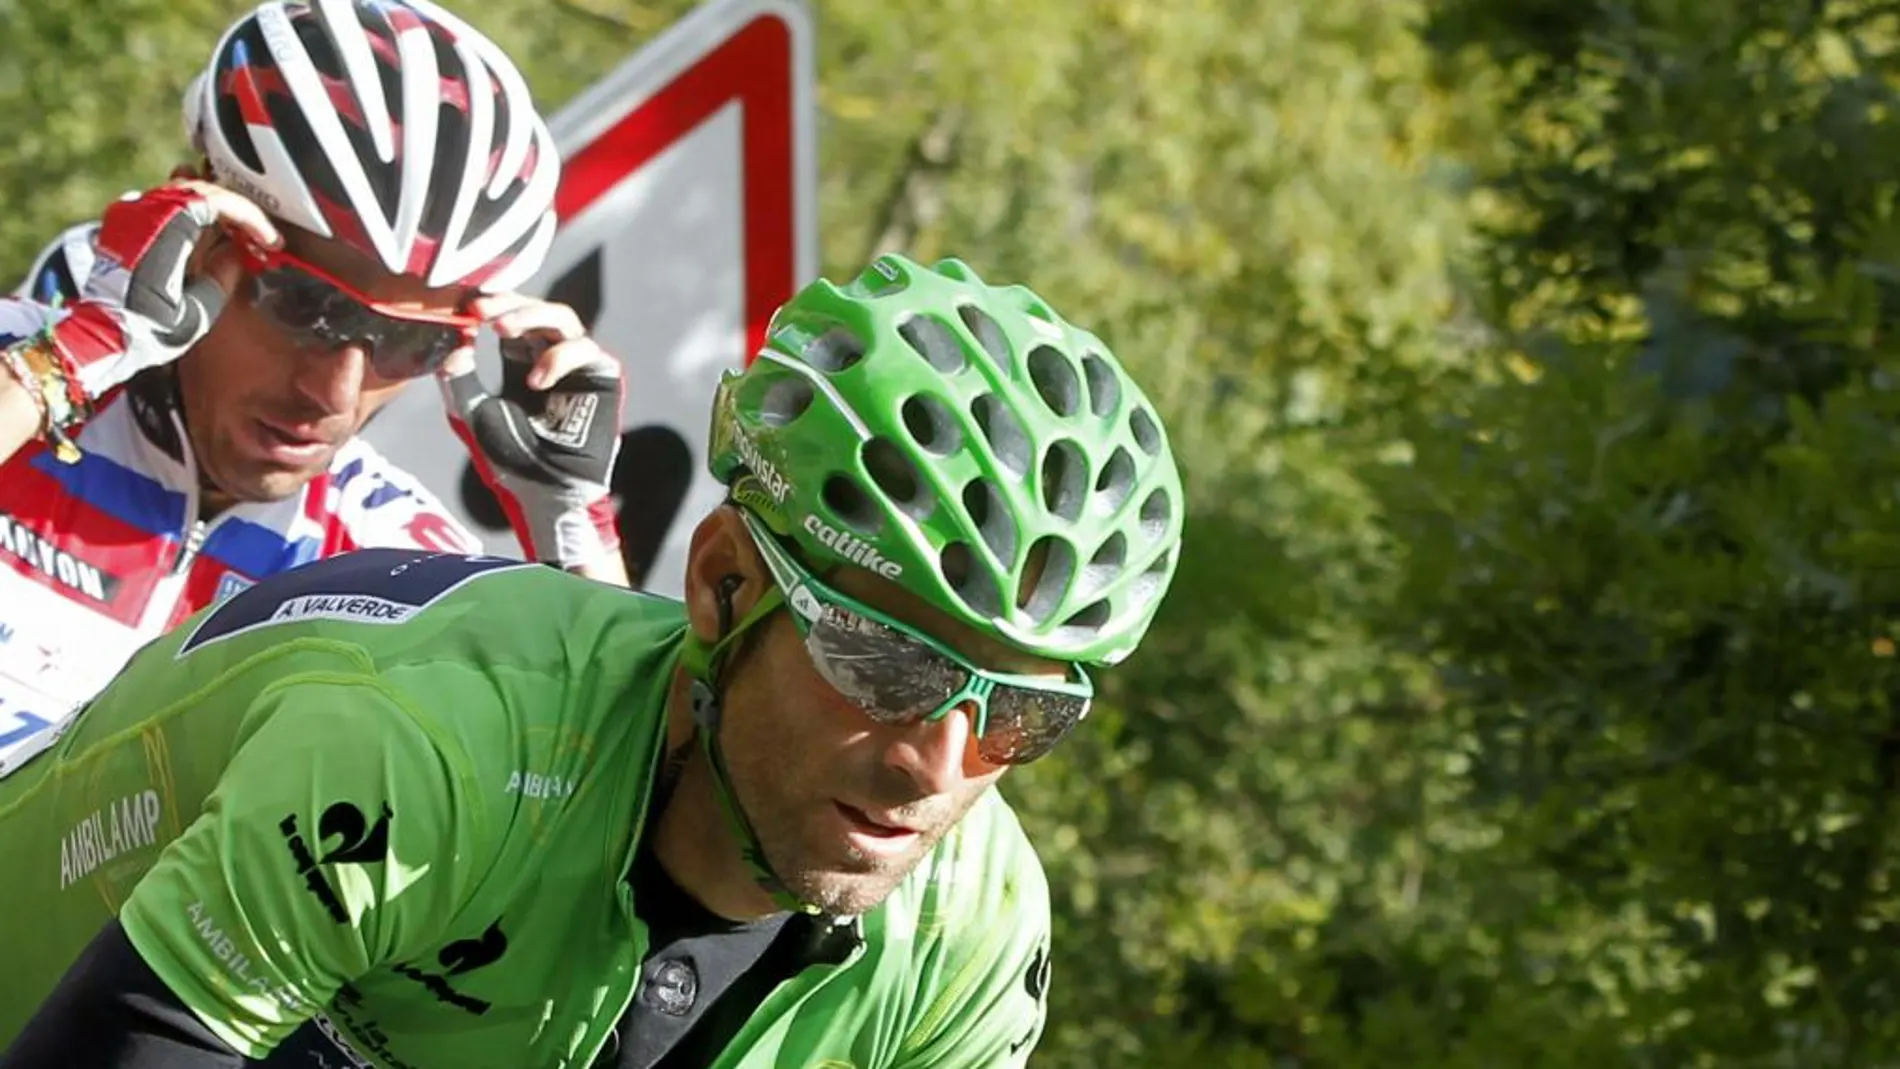 El ciclista español del equipo Movistar, Alejandro Valverde, es seguido por el español del equipo Katusha, Joaquín Rodríguez "Purito"durante la decimoquinta etapa de la Vuelta Ciclista a España. EFE/Javier Lizón